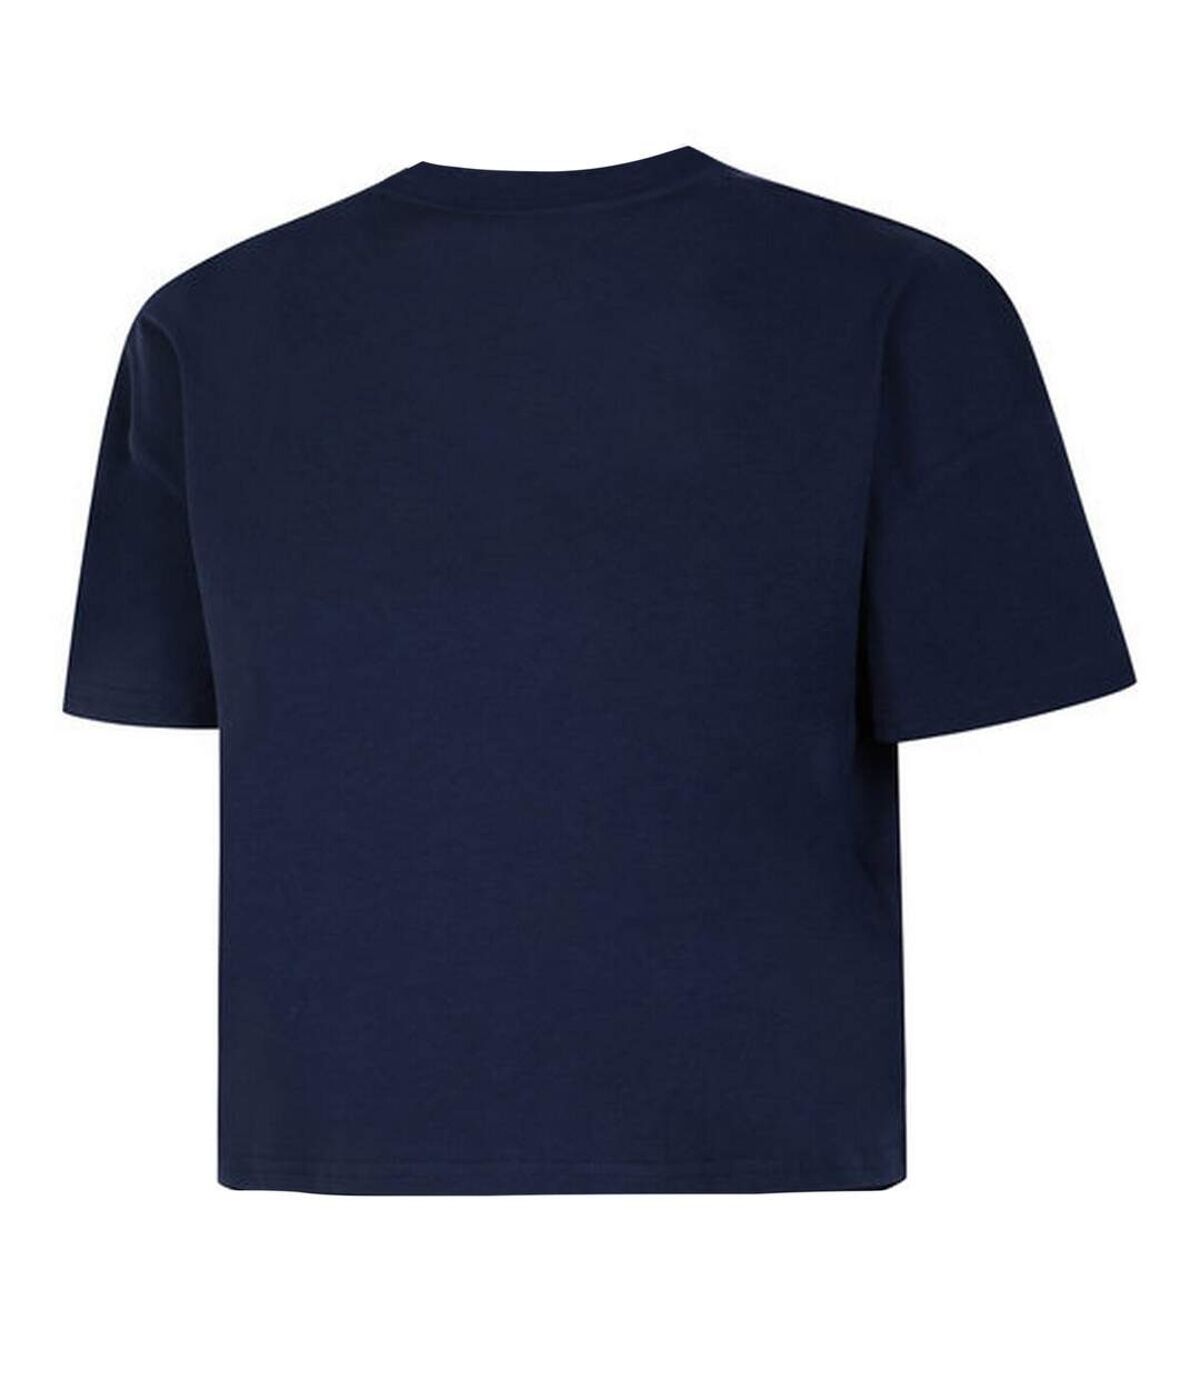 Umbro - T-shirt court - Femme (Indigo / Turquoise) - UTUO338